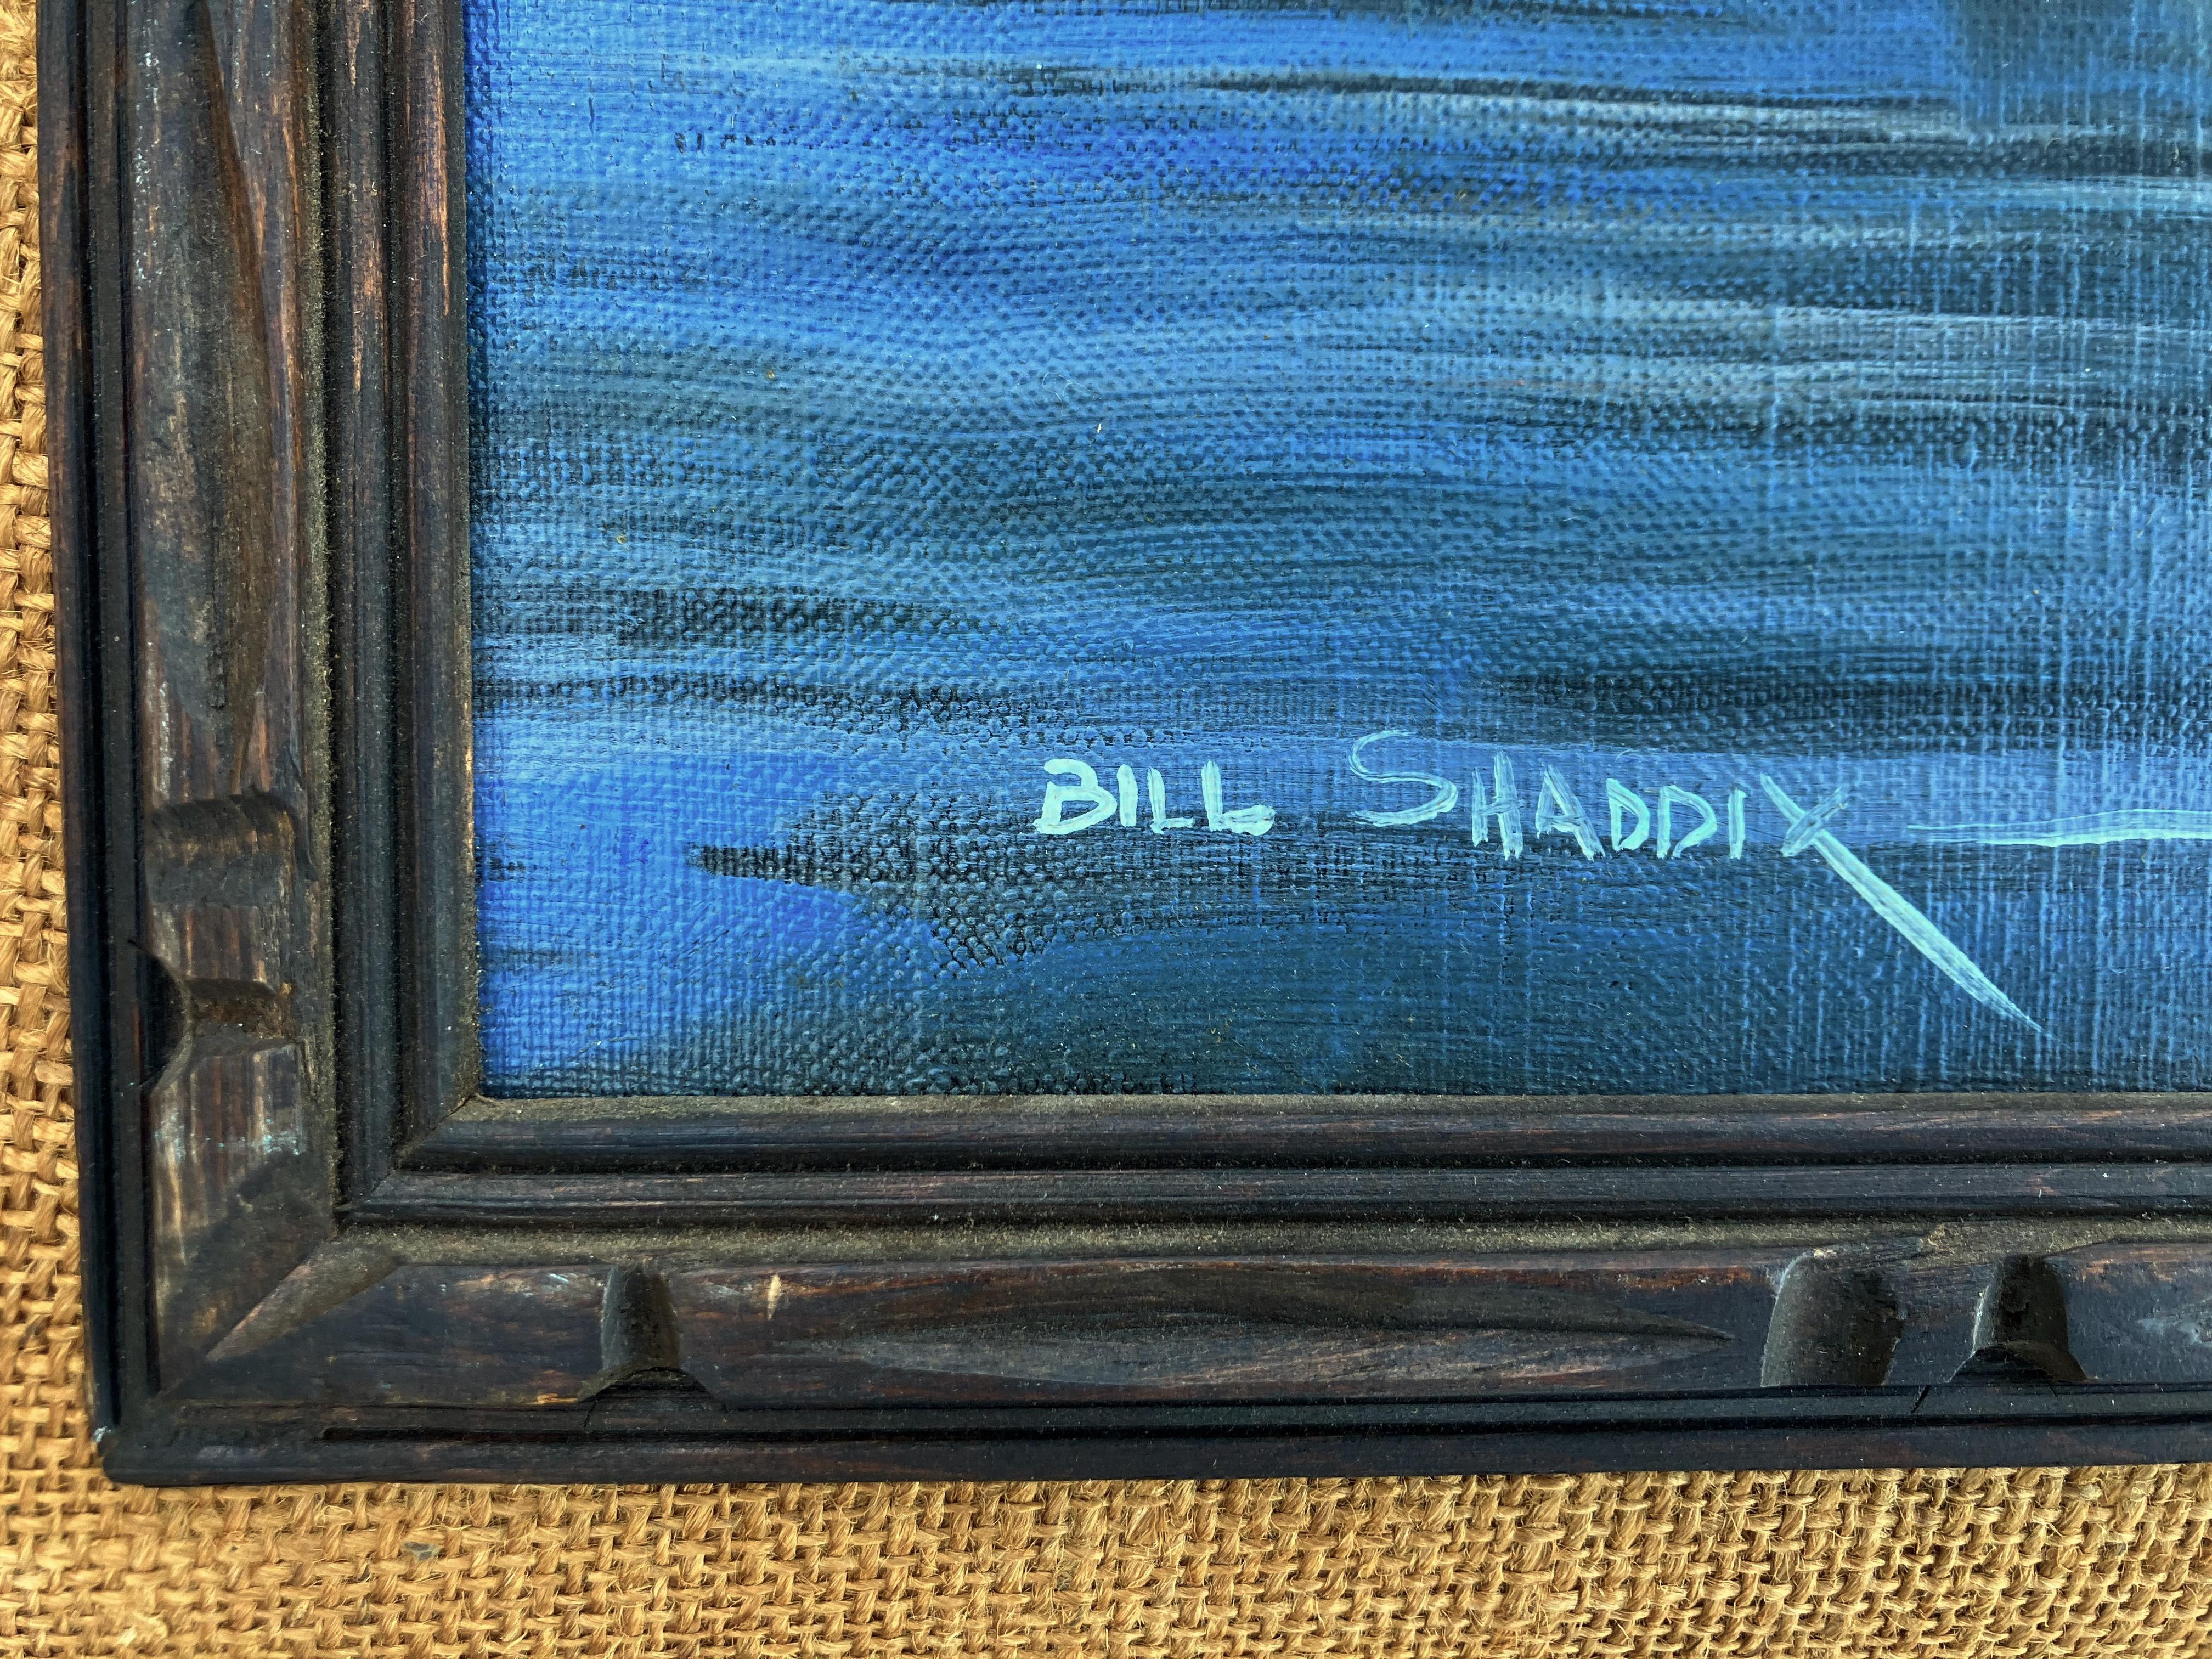 Künstler: Bill Shaddix - Amerikaner (1931- )
Titel: Tiefe Schatten
Jahr: ca. 1980
Medium: Öl auf Leinwand
Größe: 15,5 x 19,5 Zoll. 
Gerahmte Größe: 27 x 31 Zoll
Unterschrift: Signiert unten links
Zustand: Sehr gut

Diese Winterlandschaft stammt von